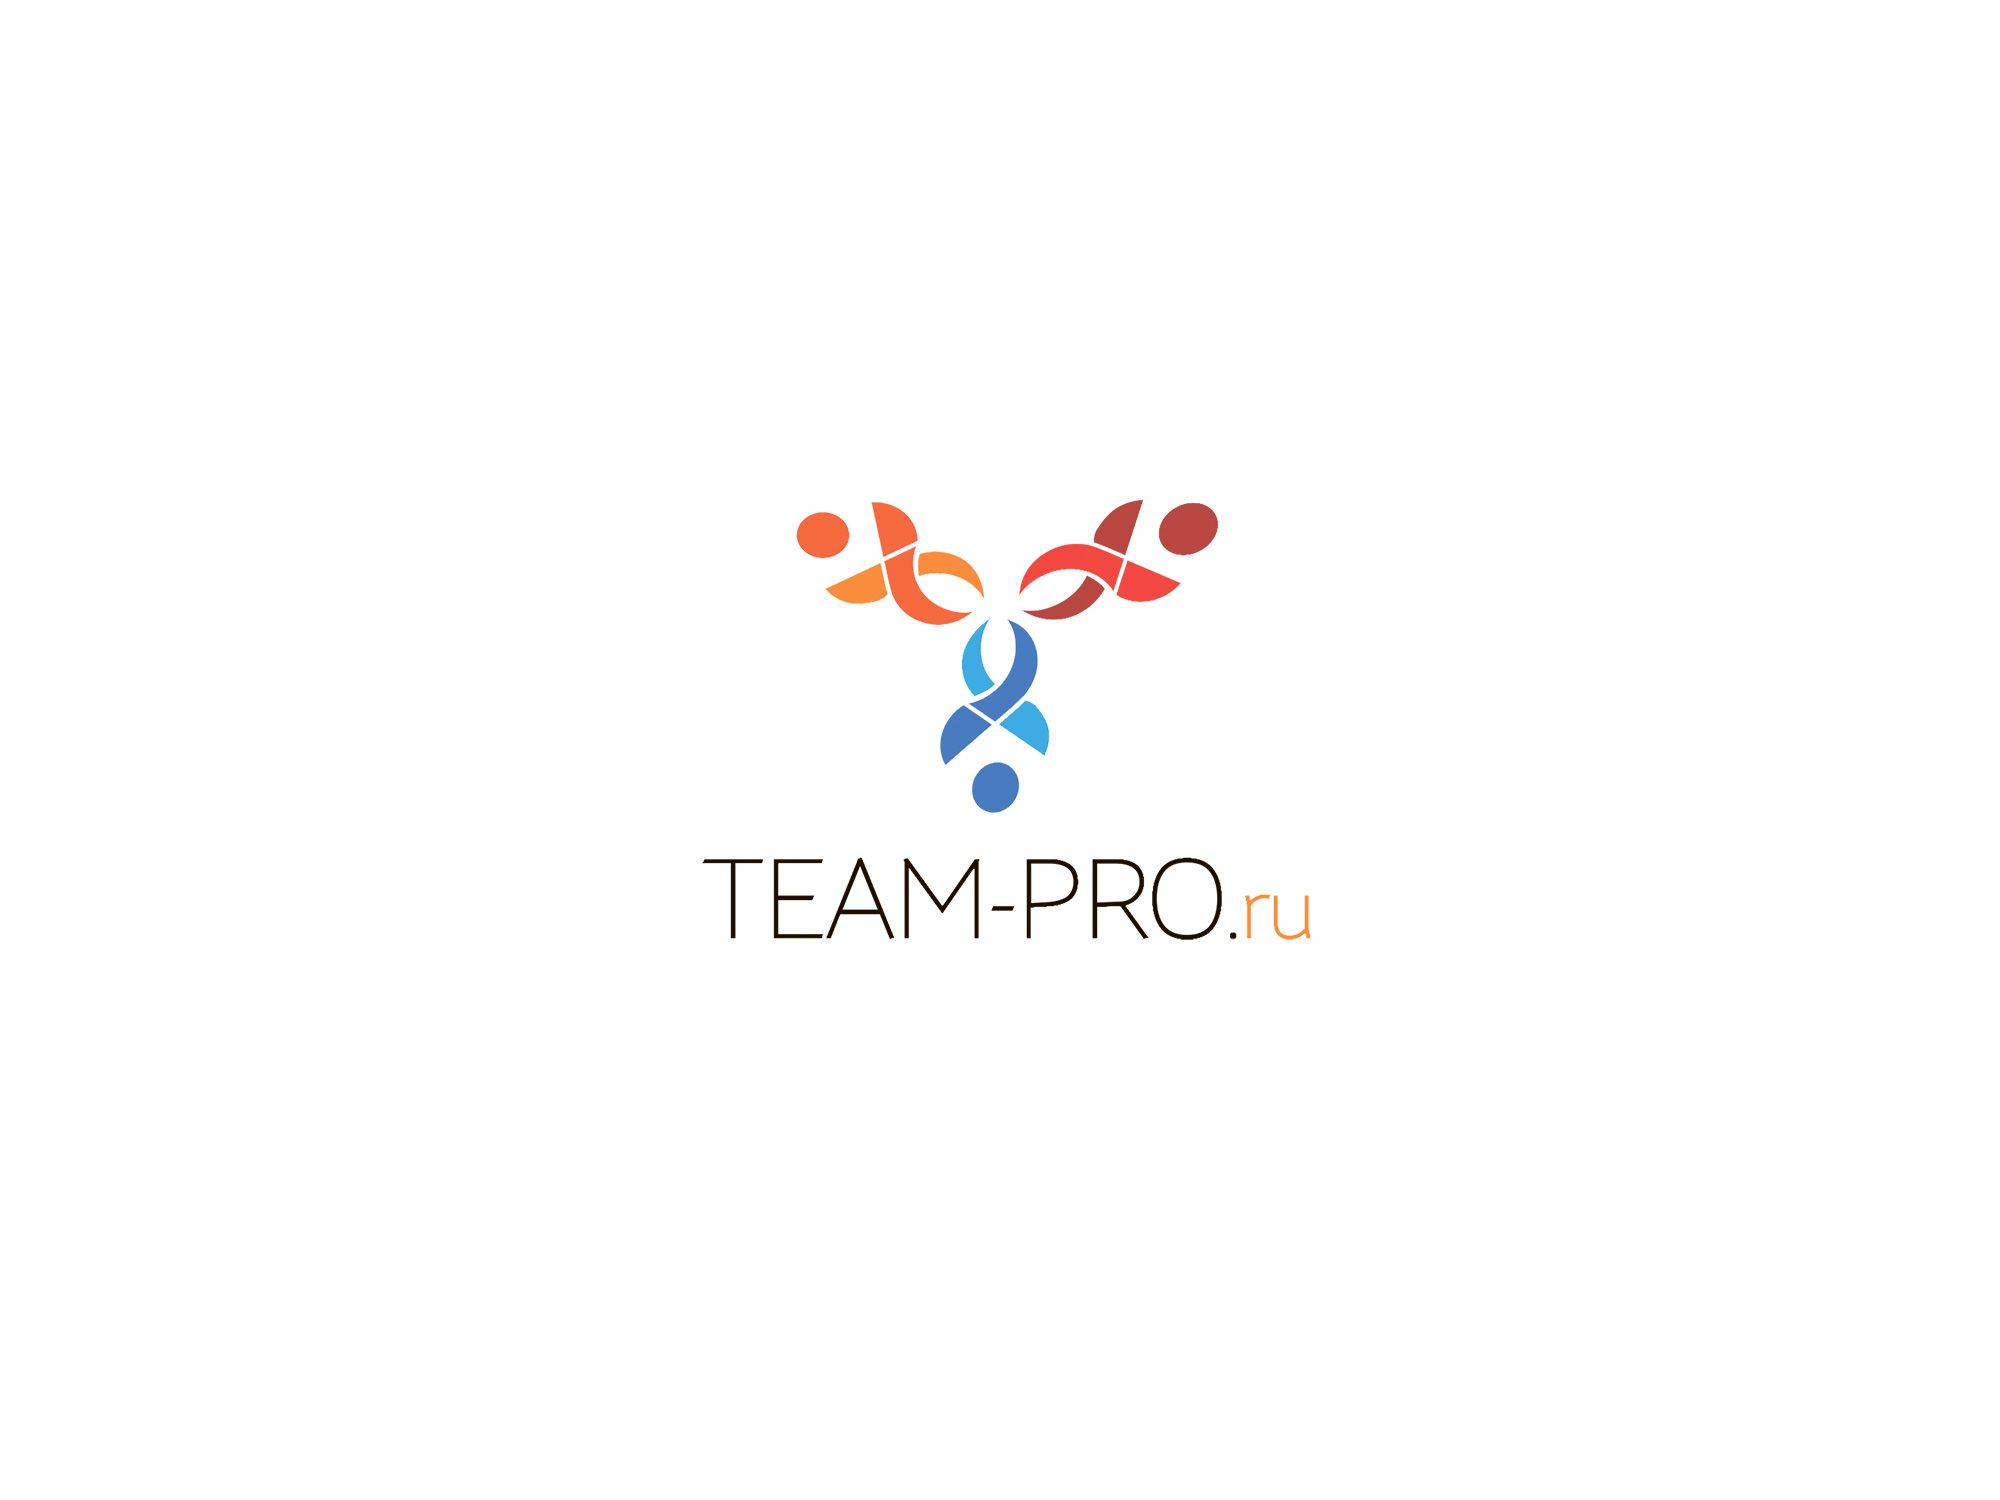 Логотип для команды разработчиков сайтов - дизайнер spawnkr